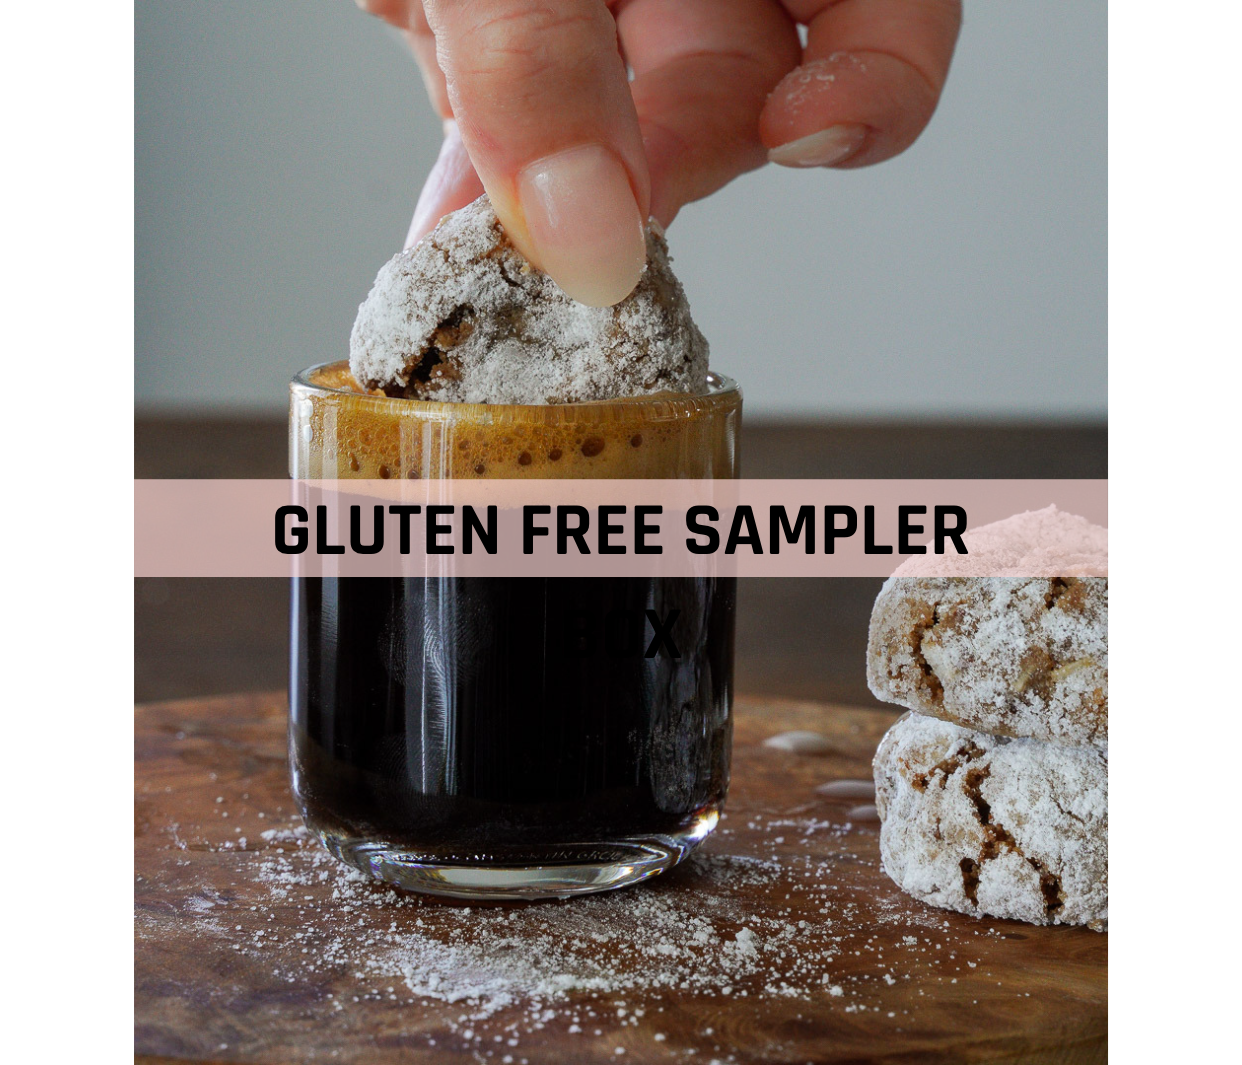 The Gluten Free Sampler